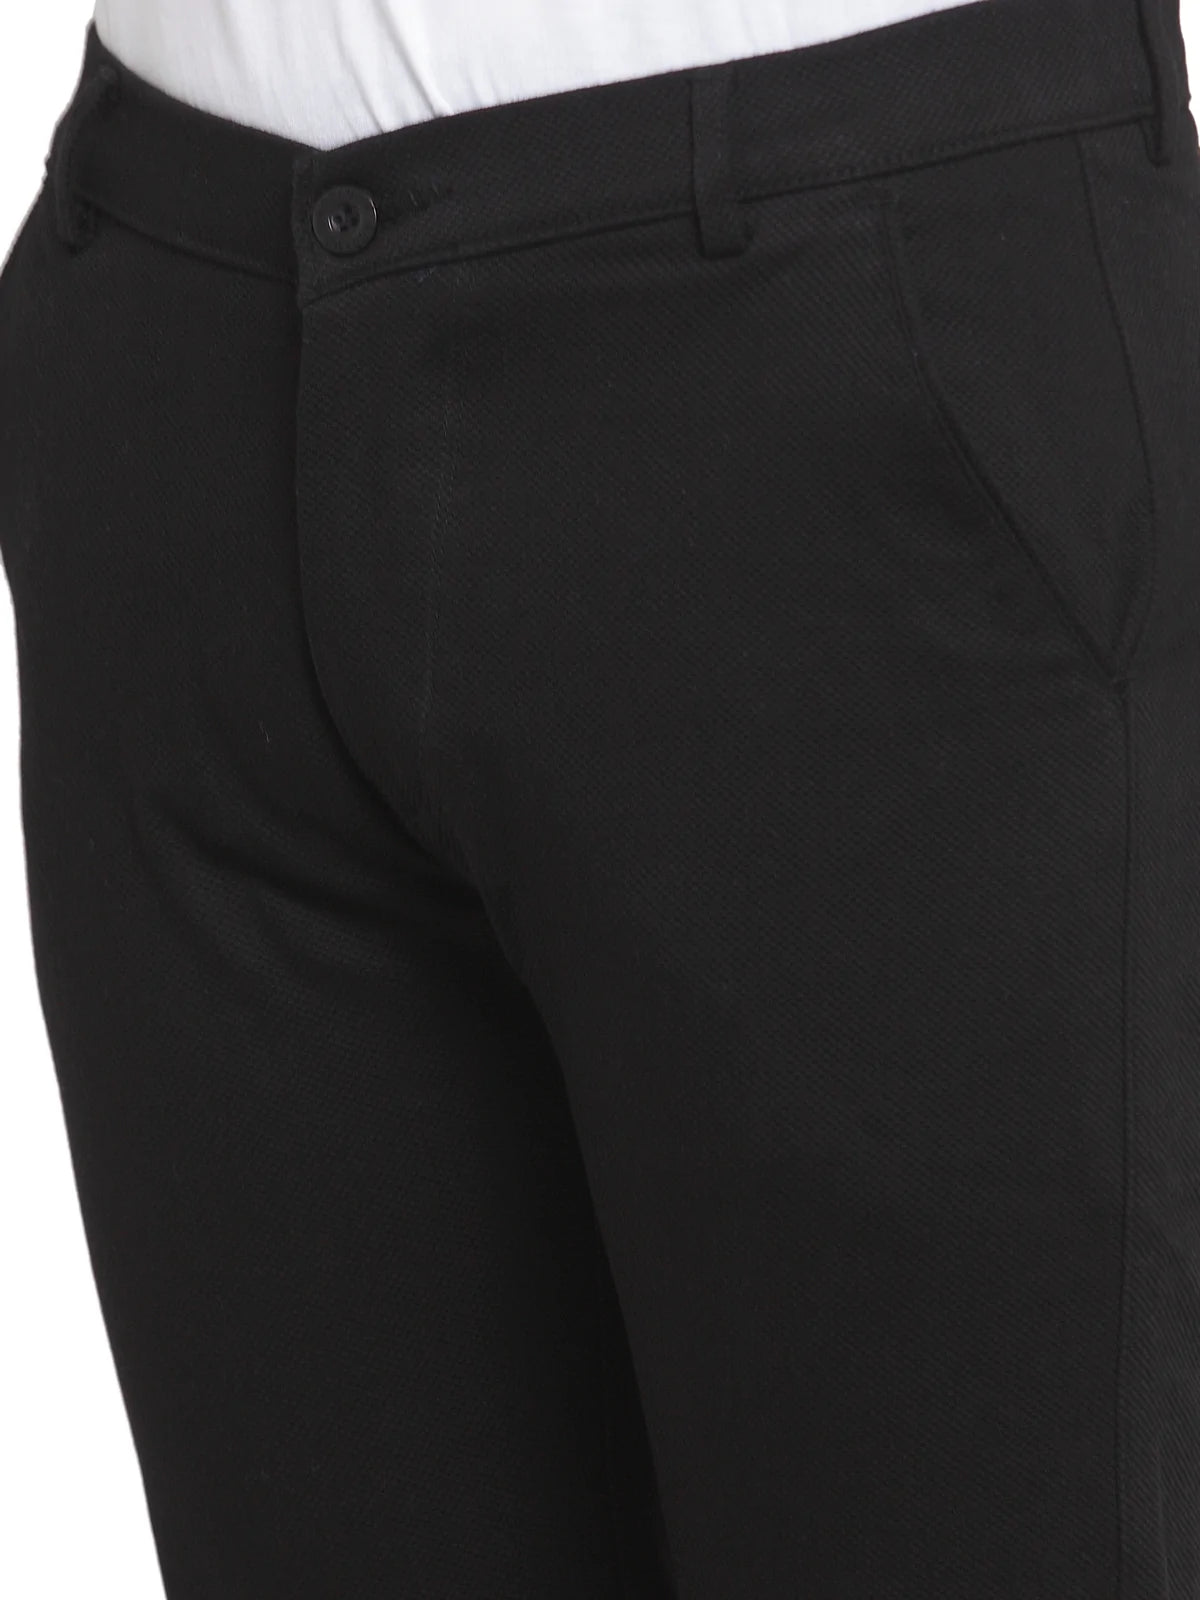 Men Black Slim Fit Solid Regular Trousers